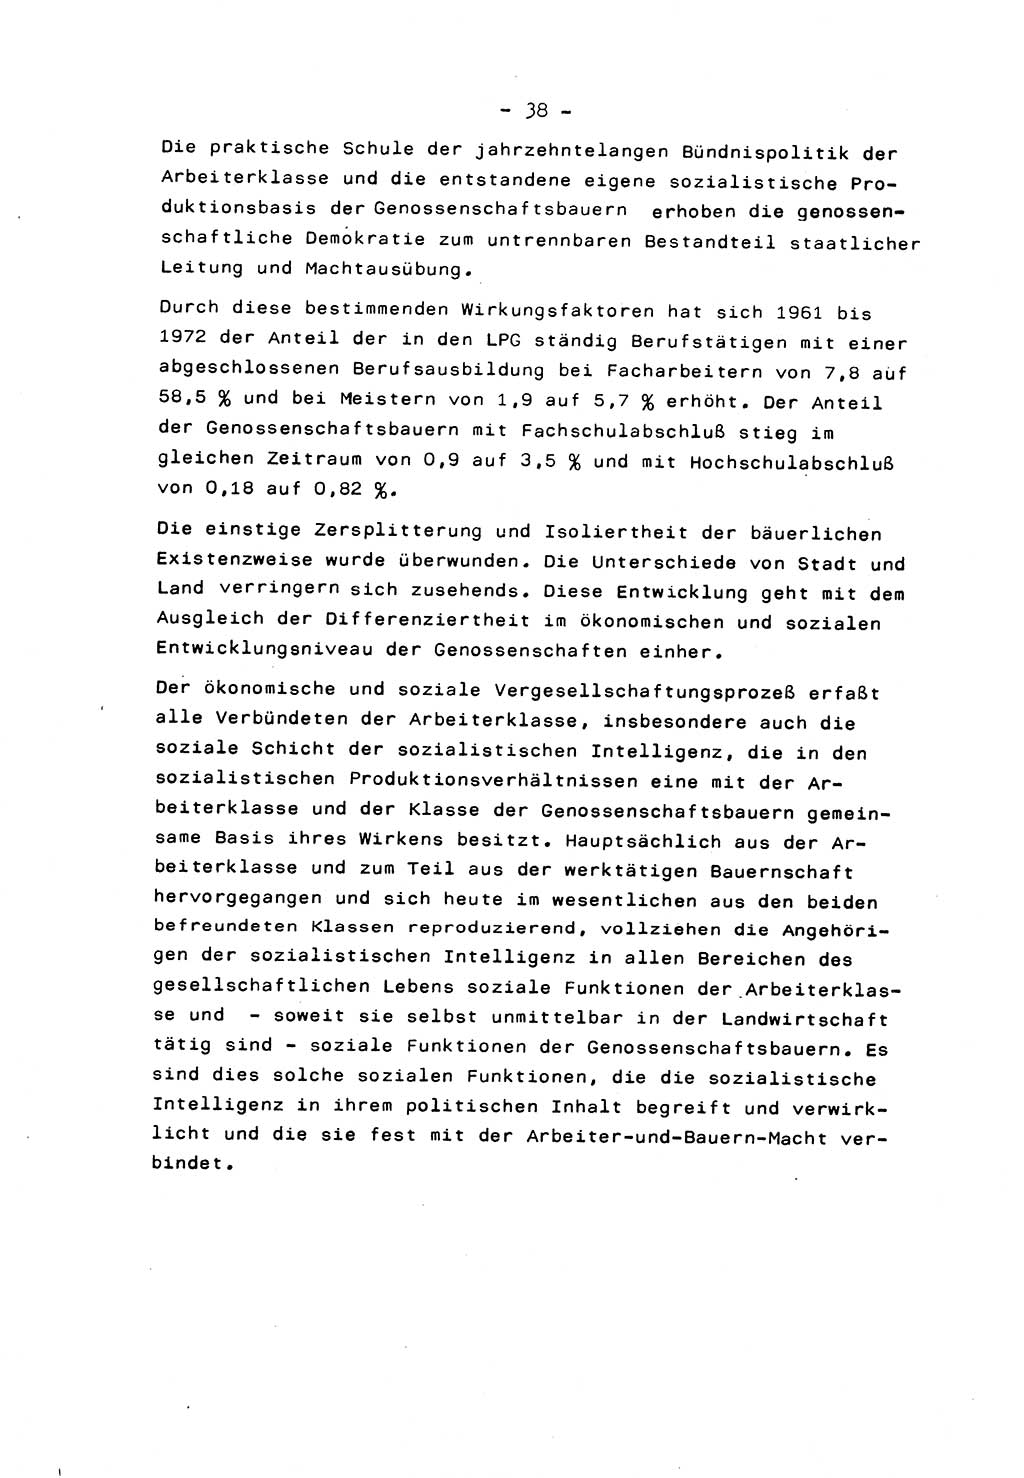 Marxistisch-leninistische Staats- und Rechtstheorie [Deutsche Demokratische Republik (DDR)] 1975, Seite 38 (ML St.-R.-Th. DDR 1975, S. 38)